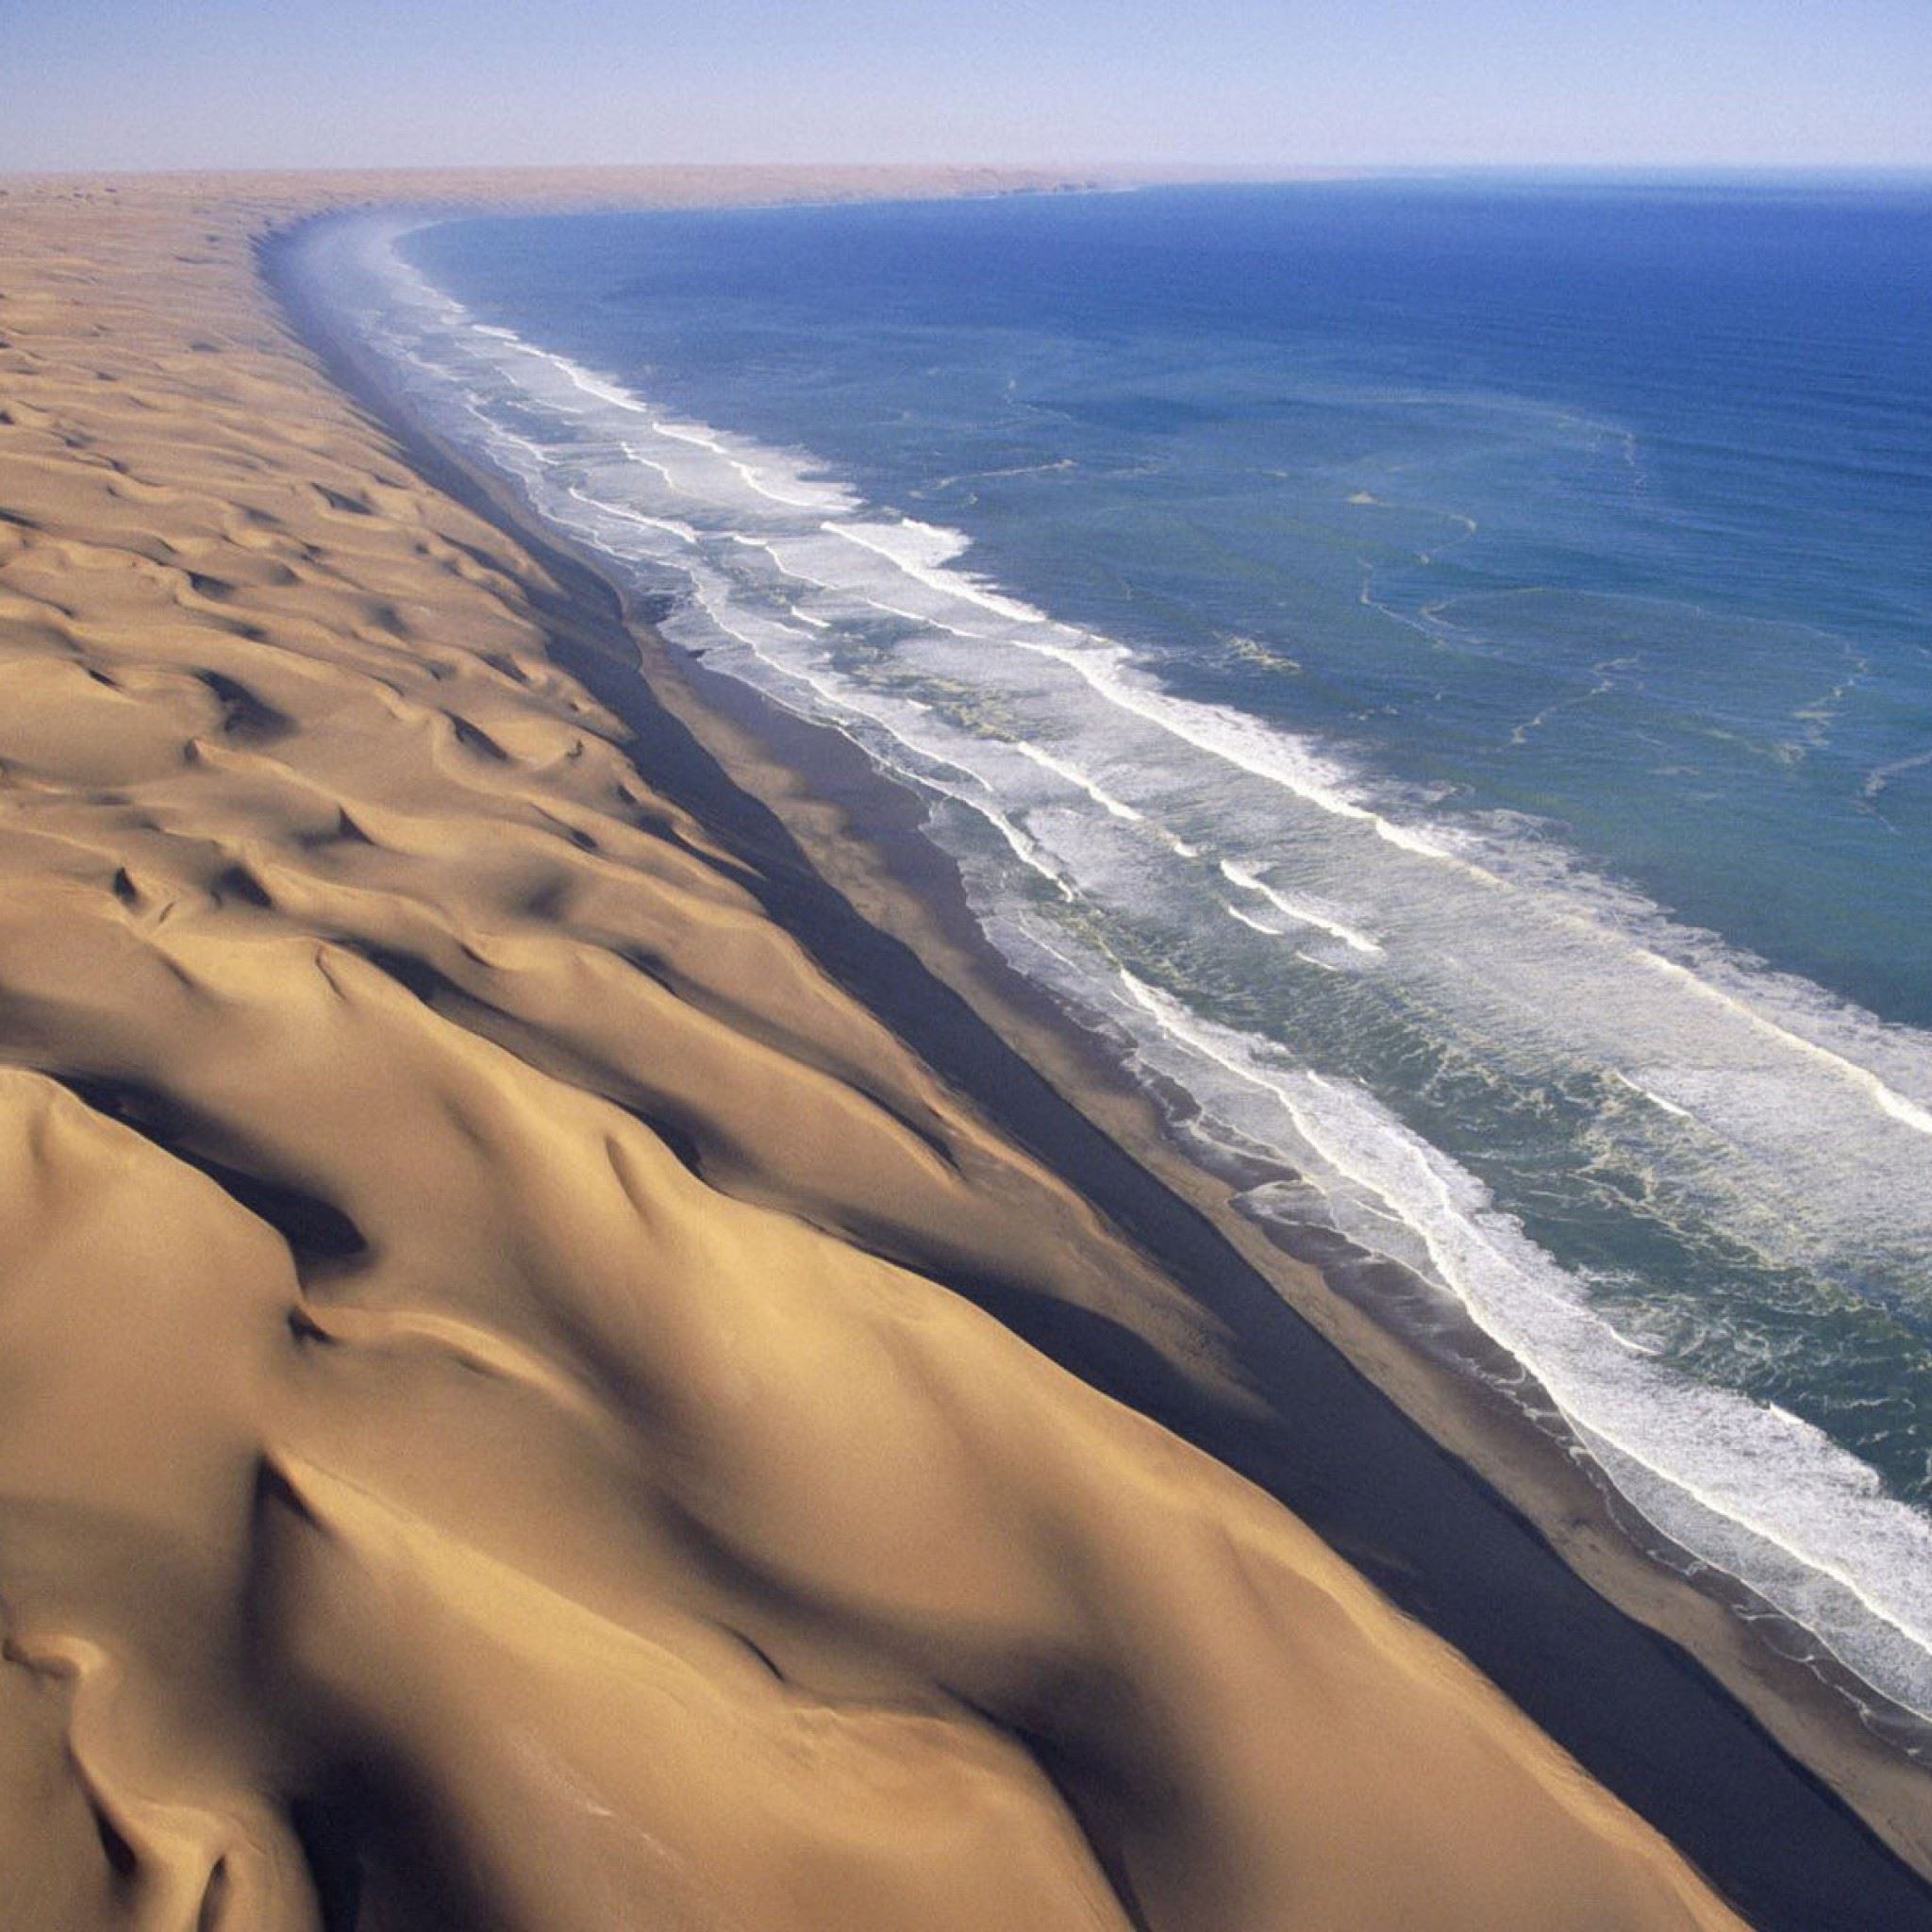 Африка береговая линия моря. Намибия пустыня Намиб. Побережье пустыни Намиб. Пустыня Намиб берег скелетов. Пустыня Намиб и Атлантический океан Намибия.